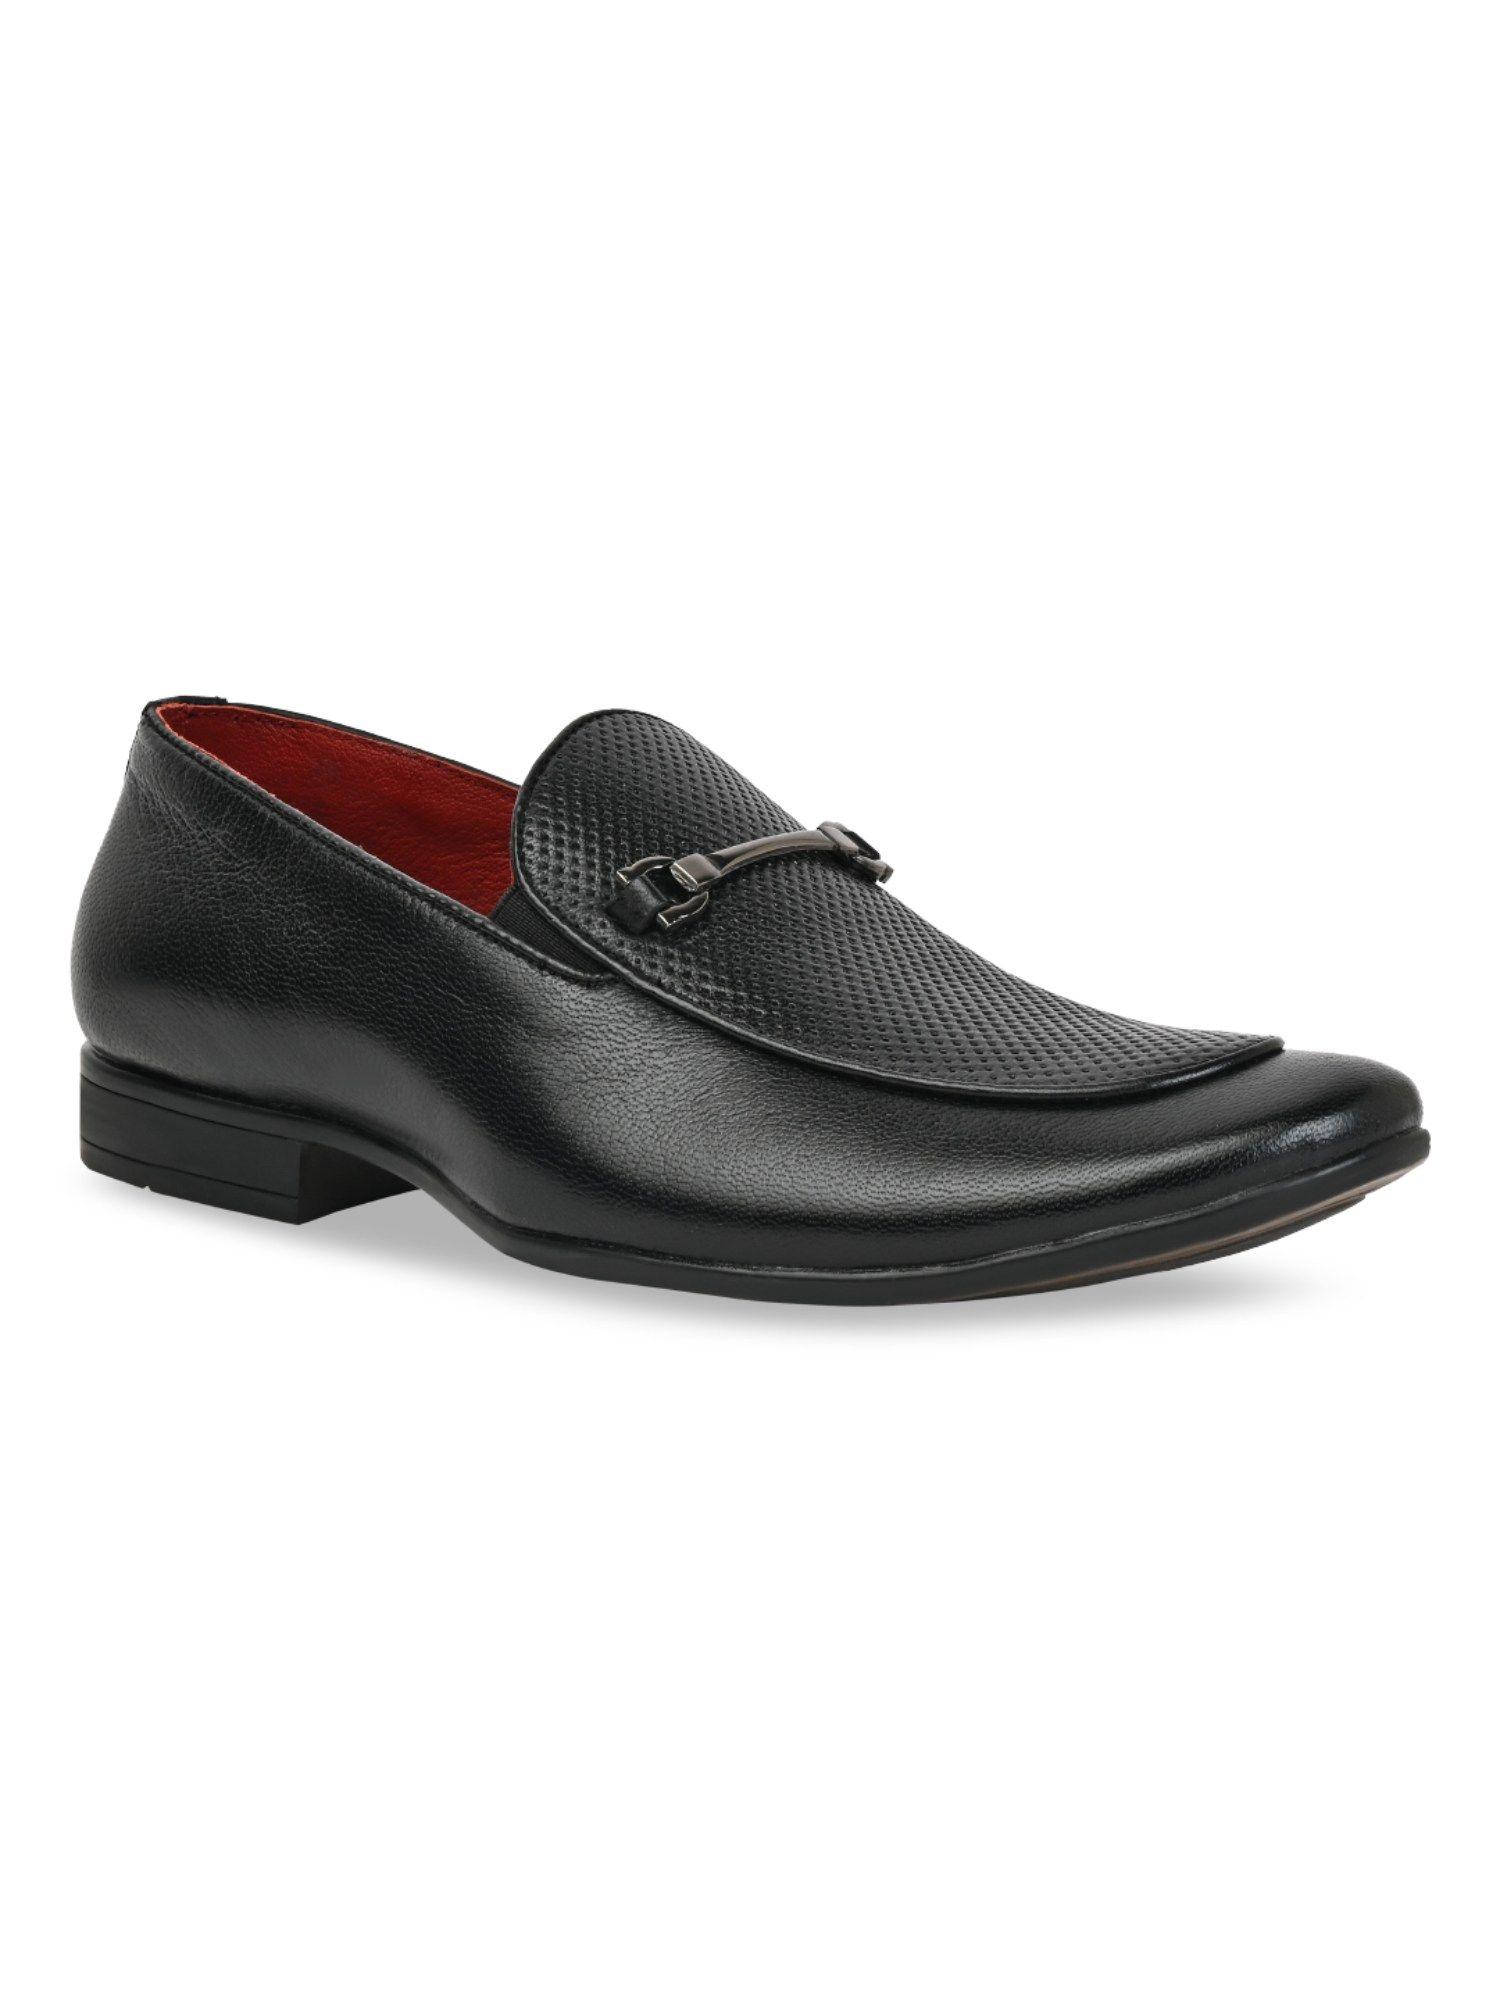 black-men-leather-laser-cut-formal-slip-on-loafers